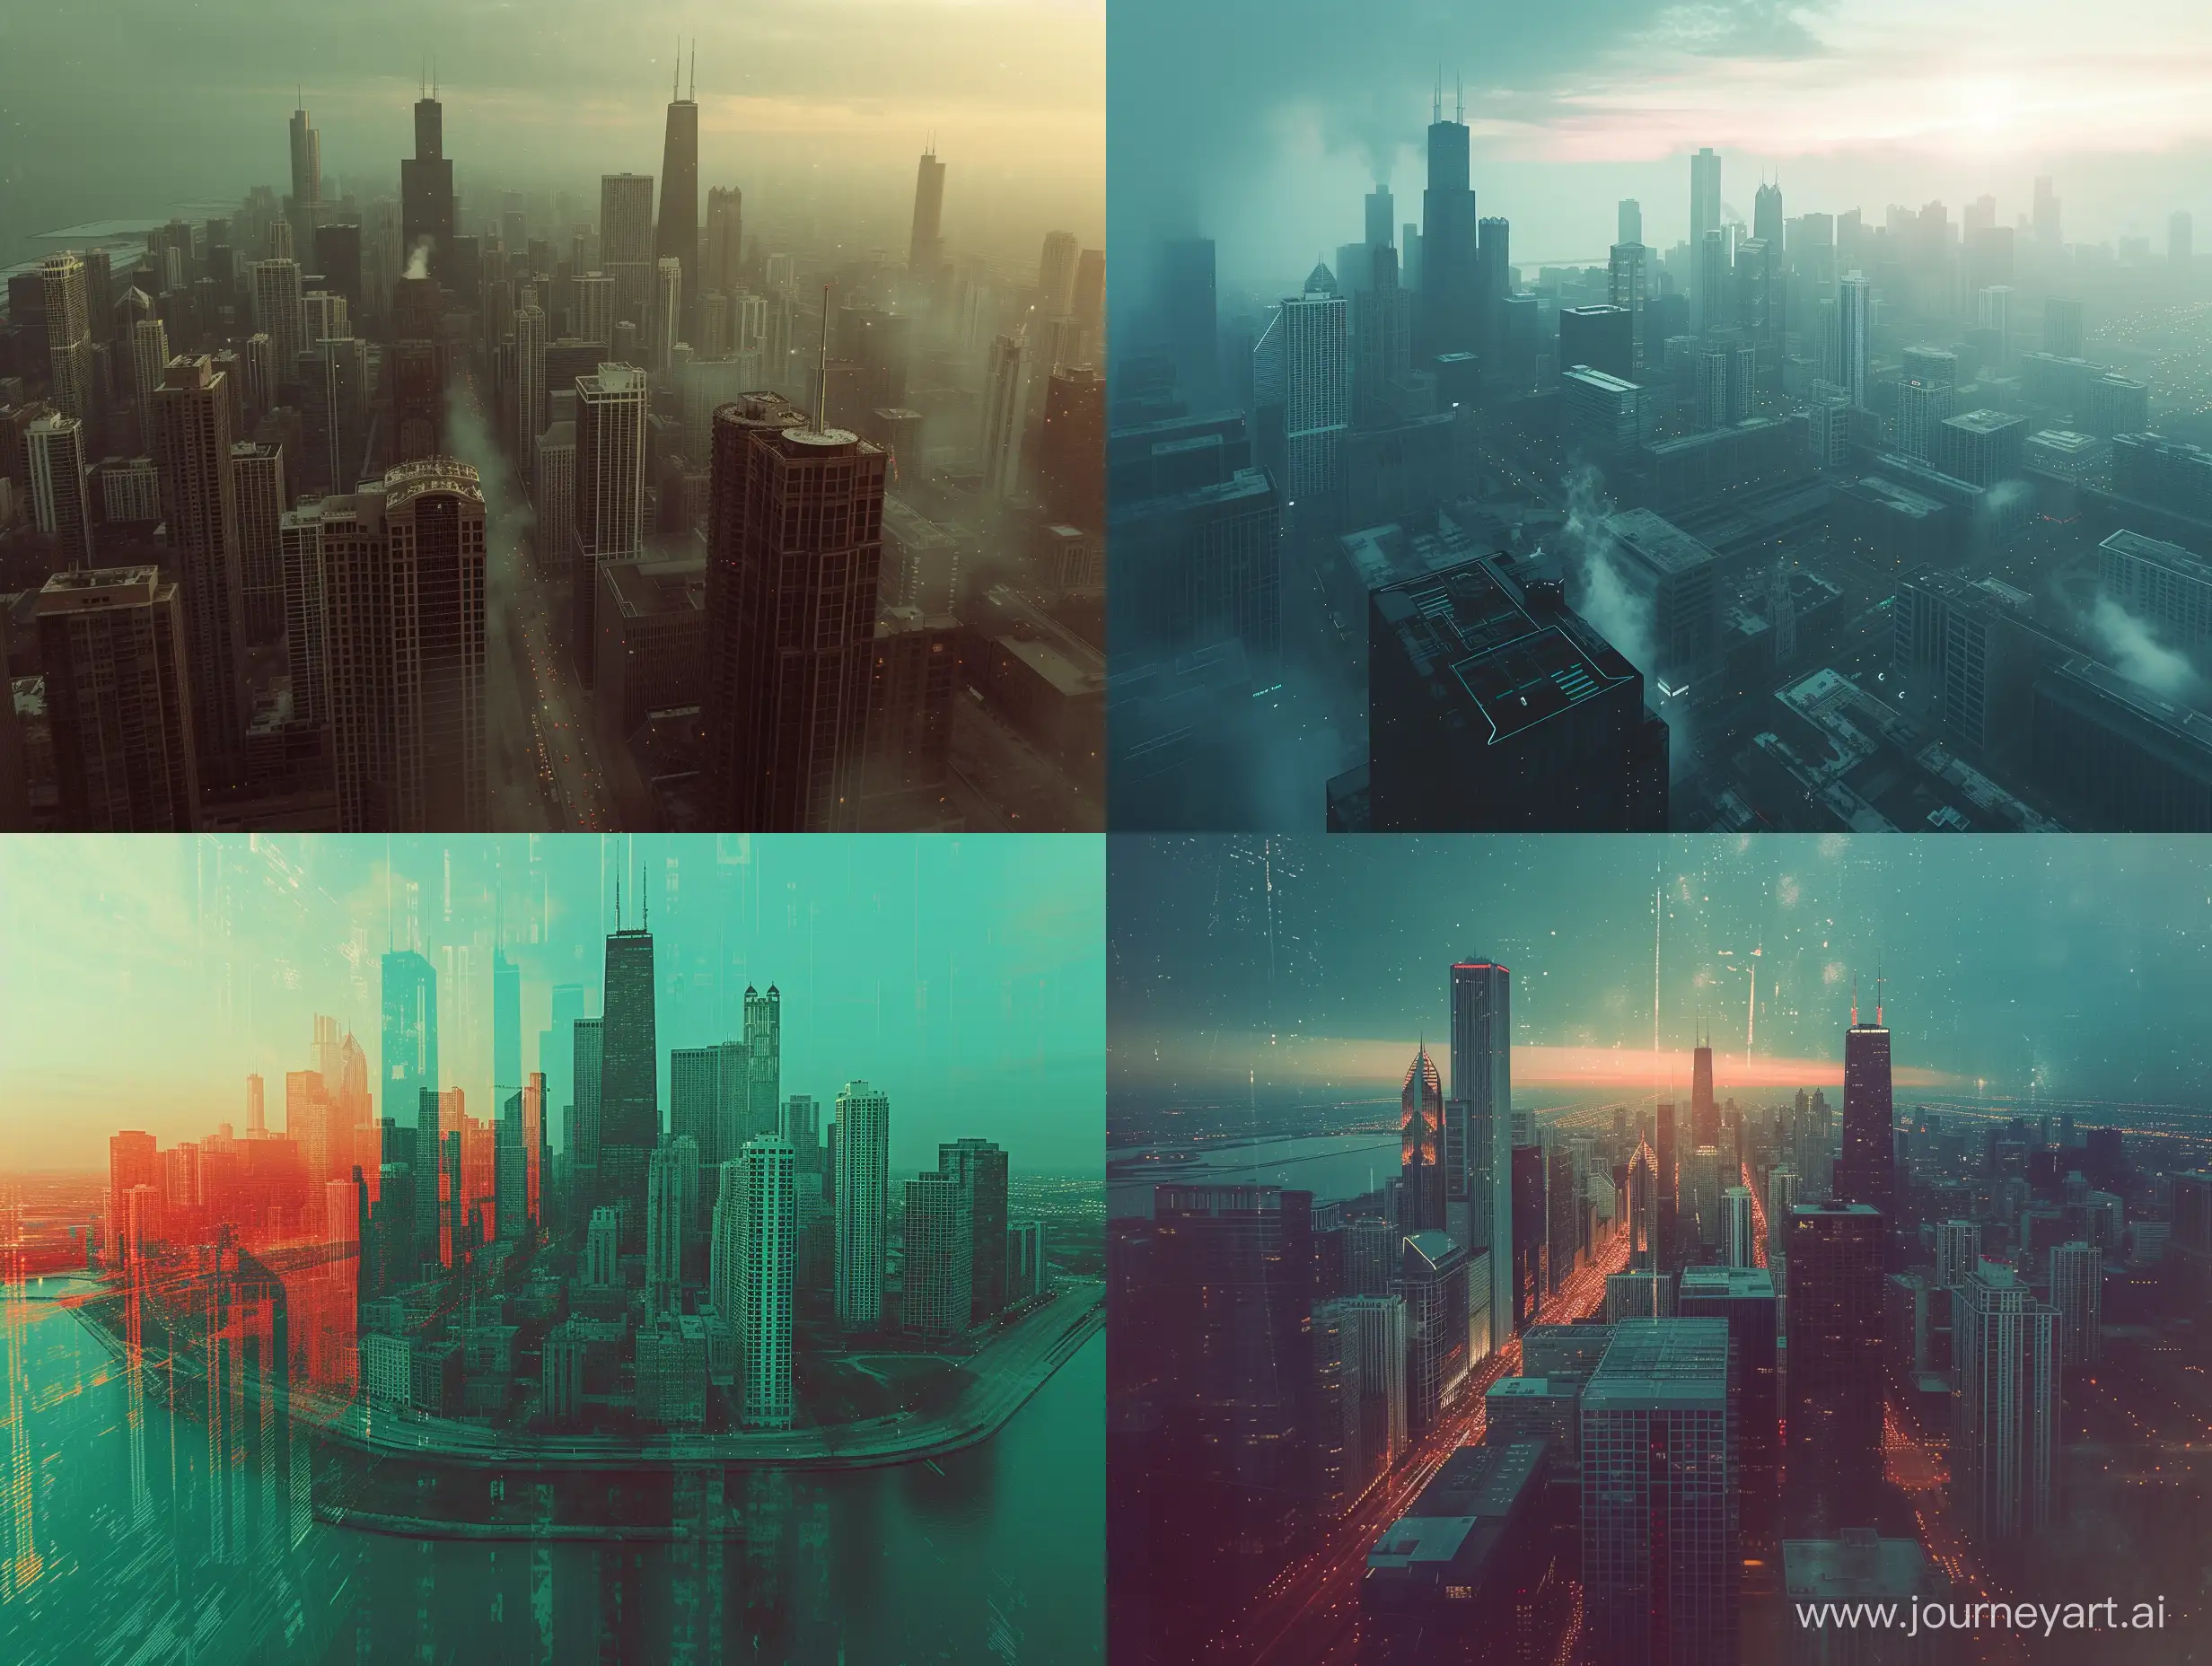 Futuristic-SciFi-Chicago-Cityscape-Urban-Landscape-with-Raw-Film-Grain-Aesthetic